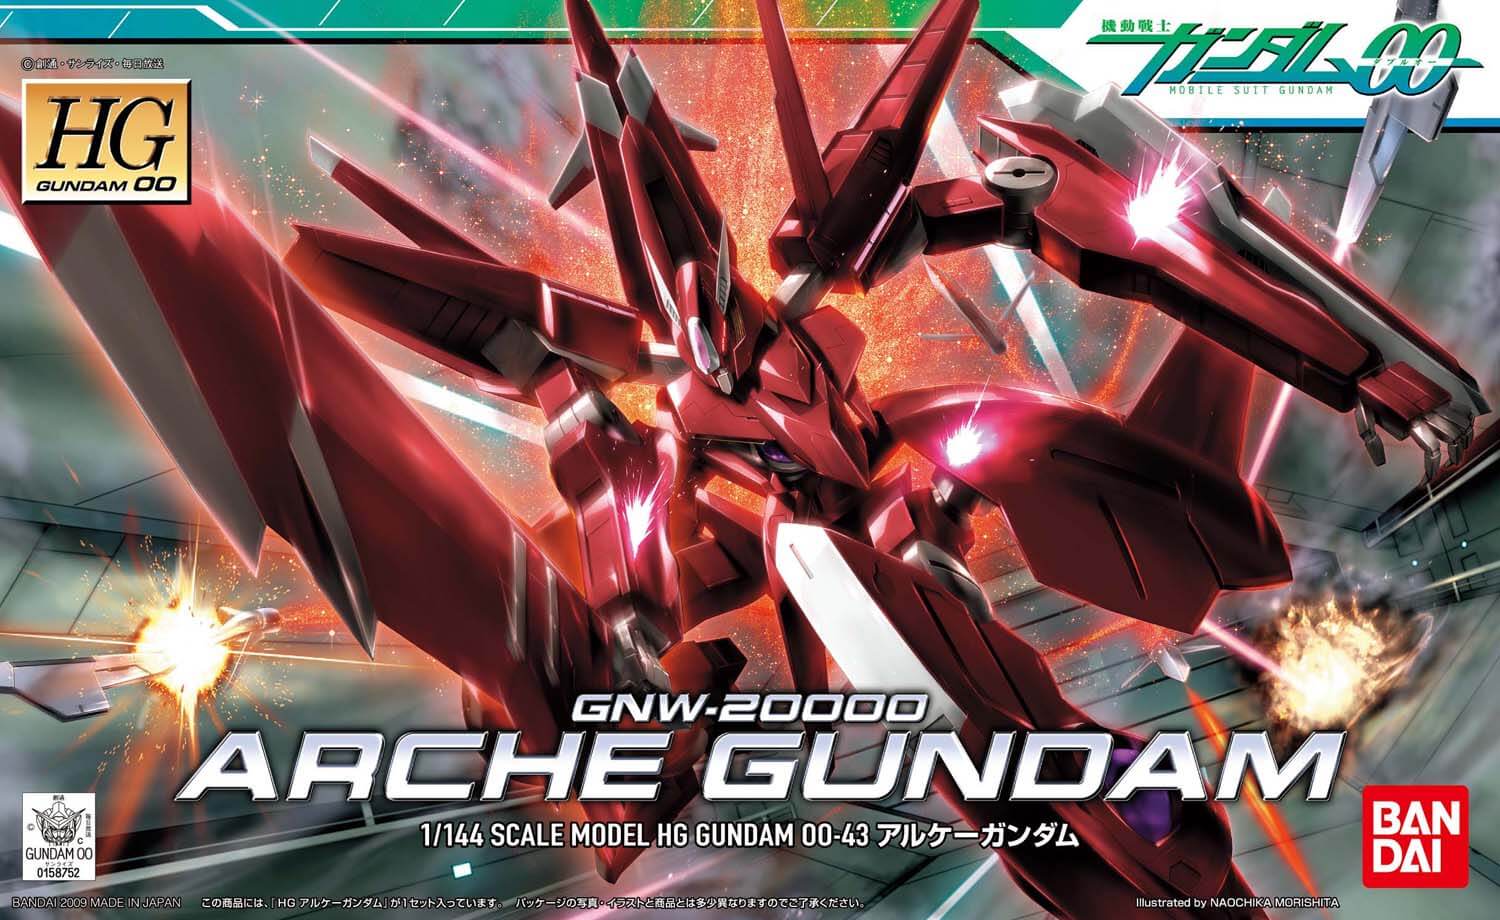 HG Gunpla Arche Gundam